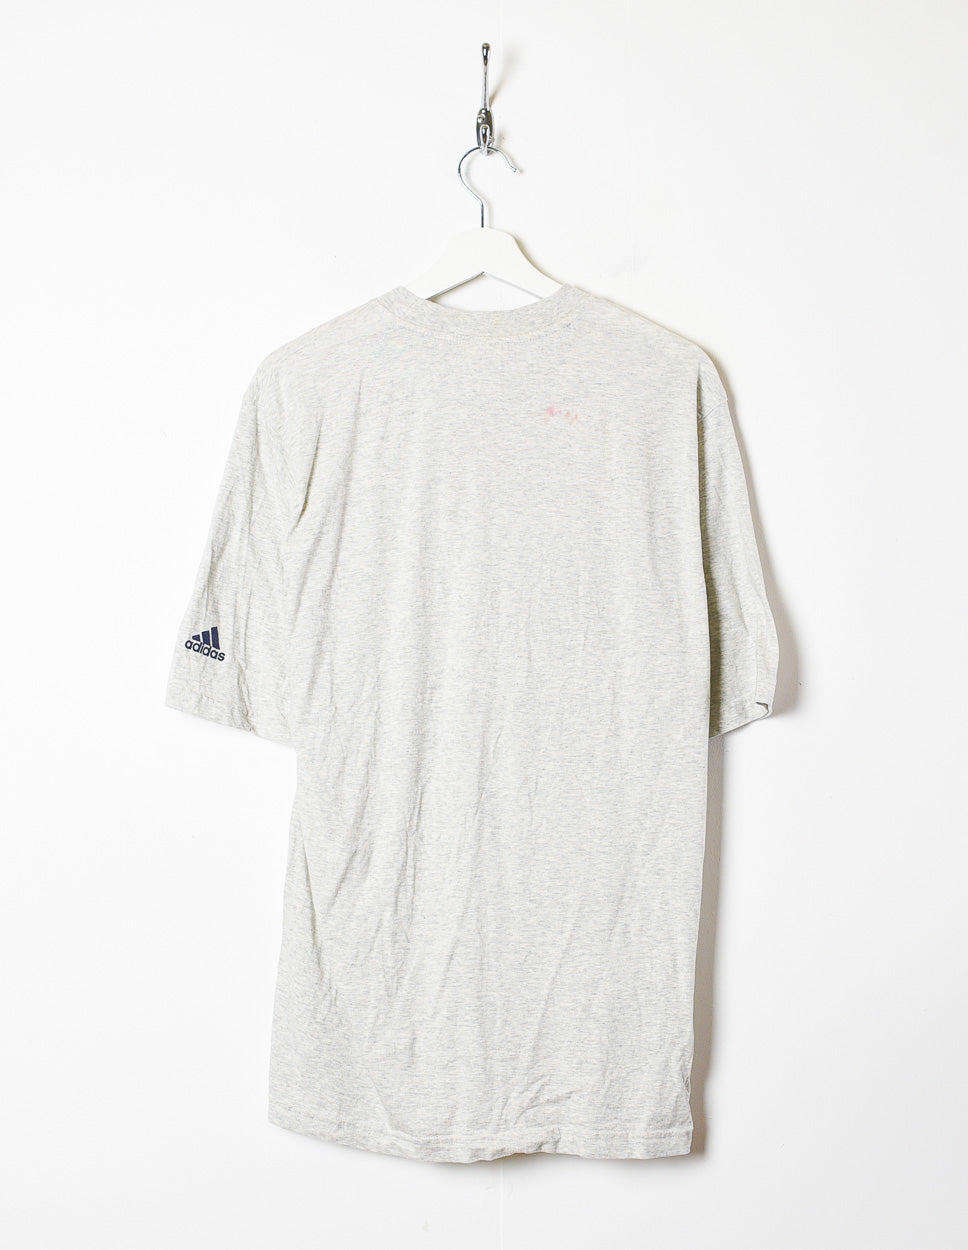 Stone Adidas T-Shirt - Large